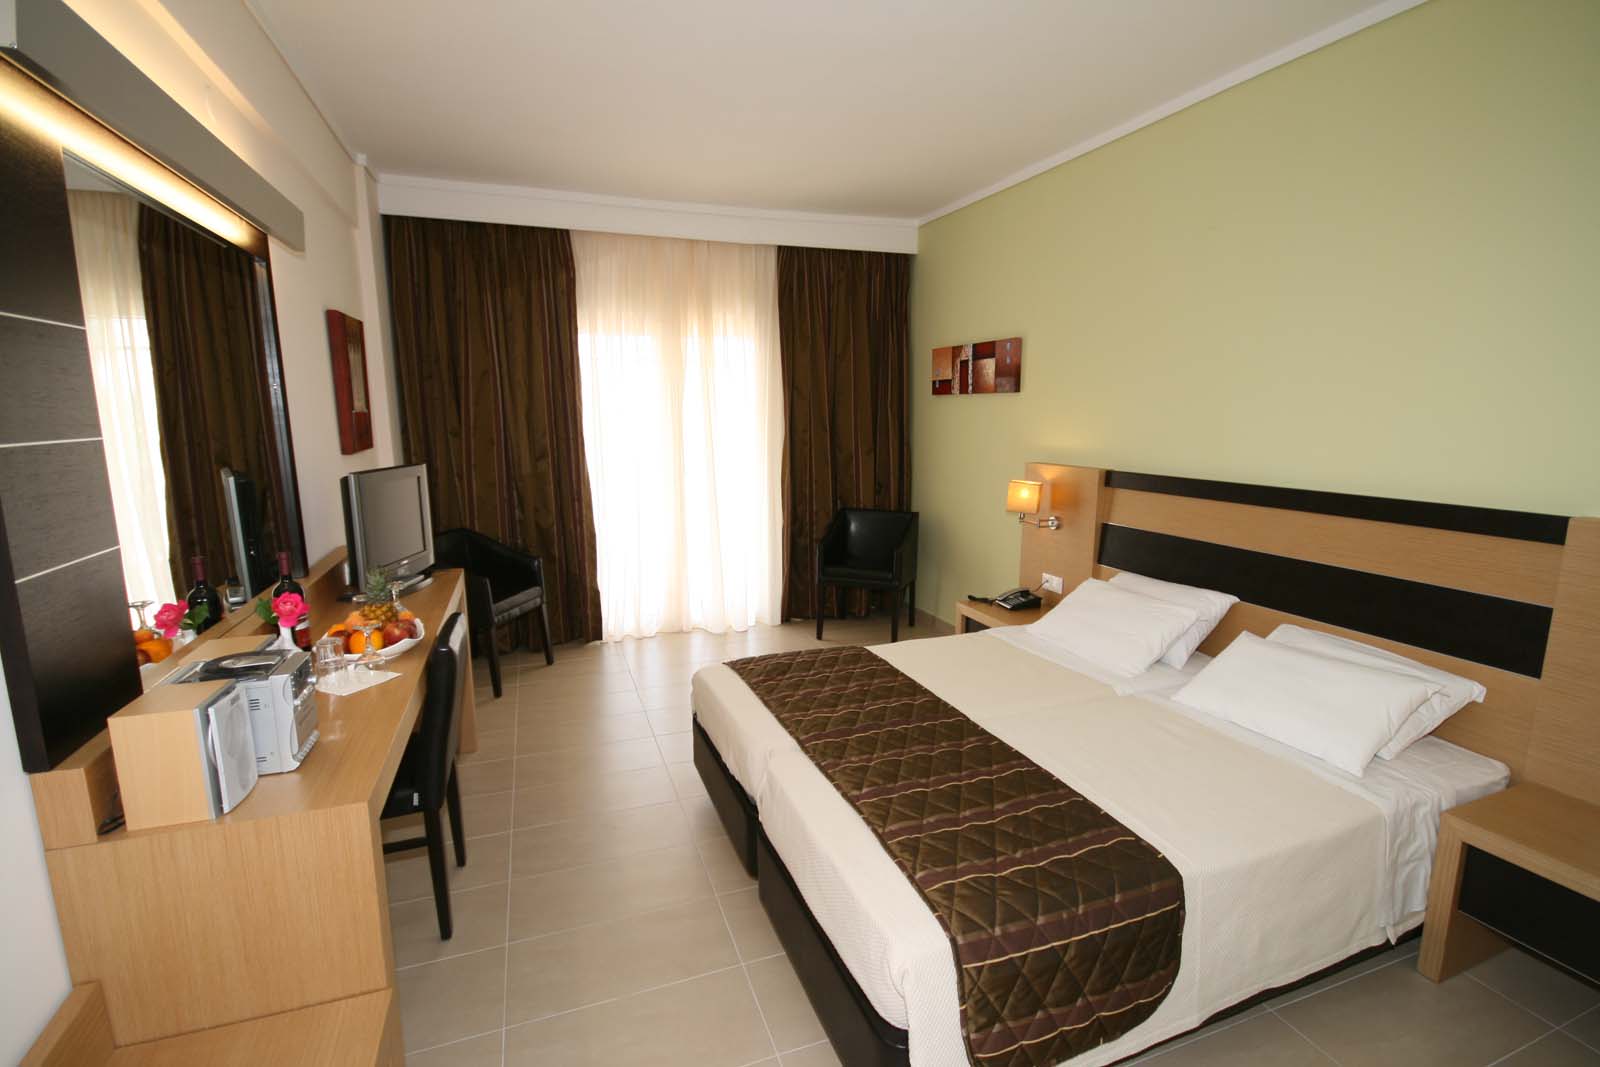 Grcka hoteli letovanje, Halkidiki, Lagomandra Beach, izgled sobe